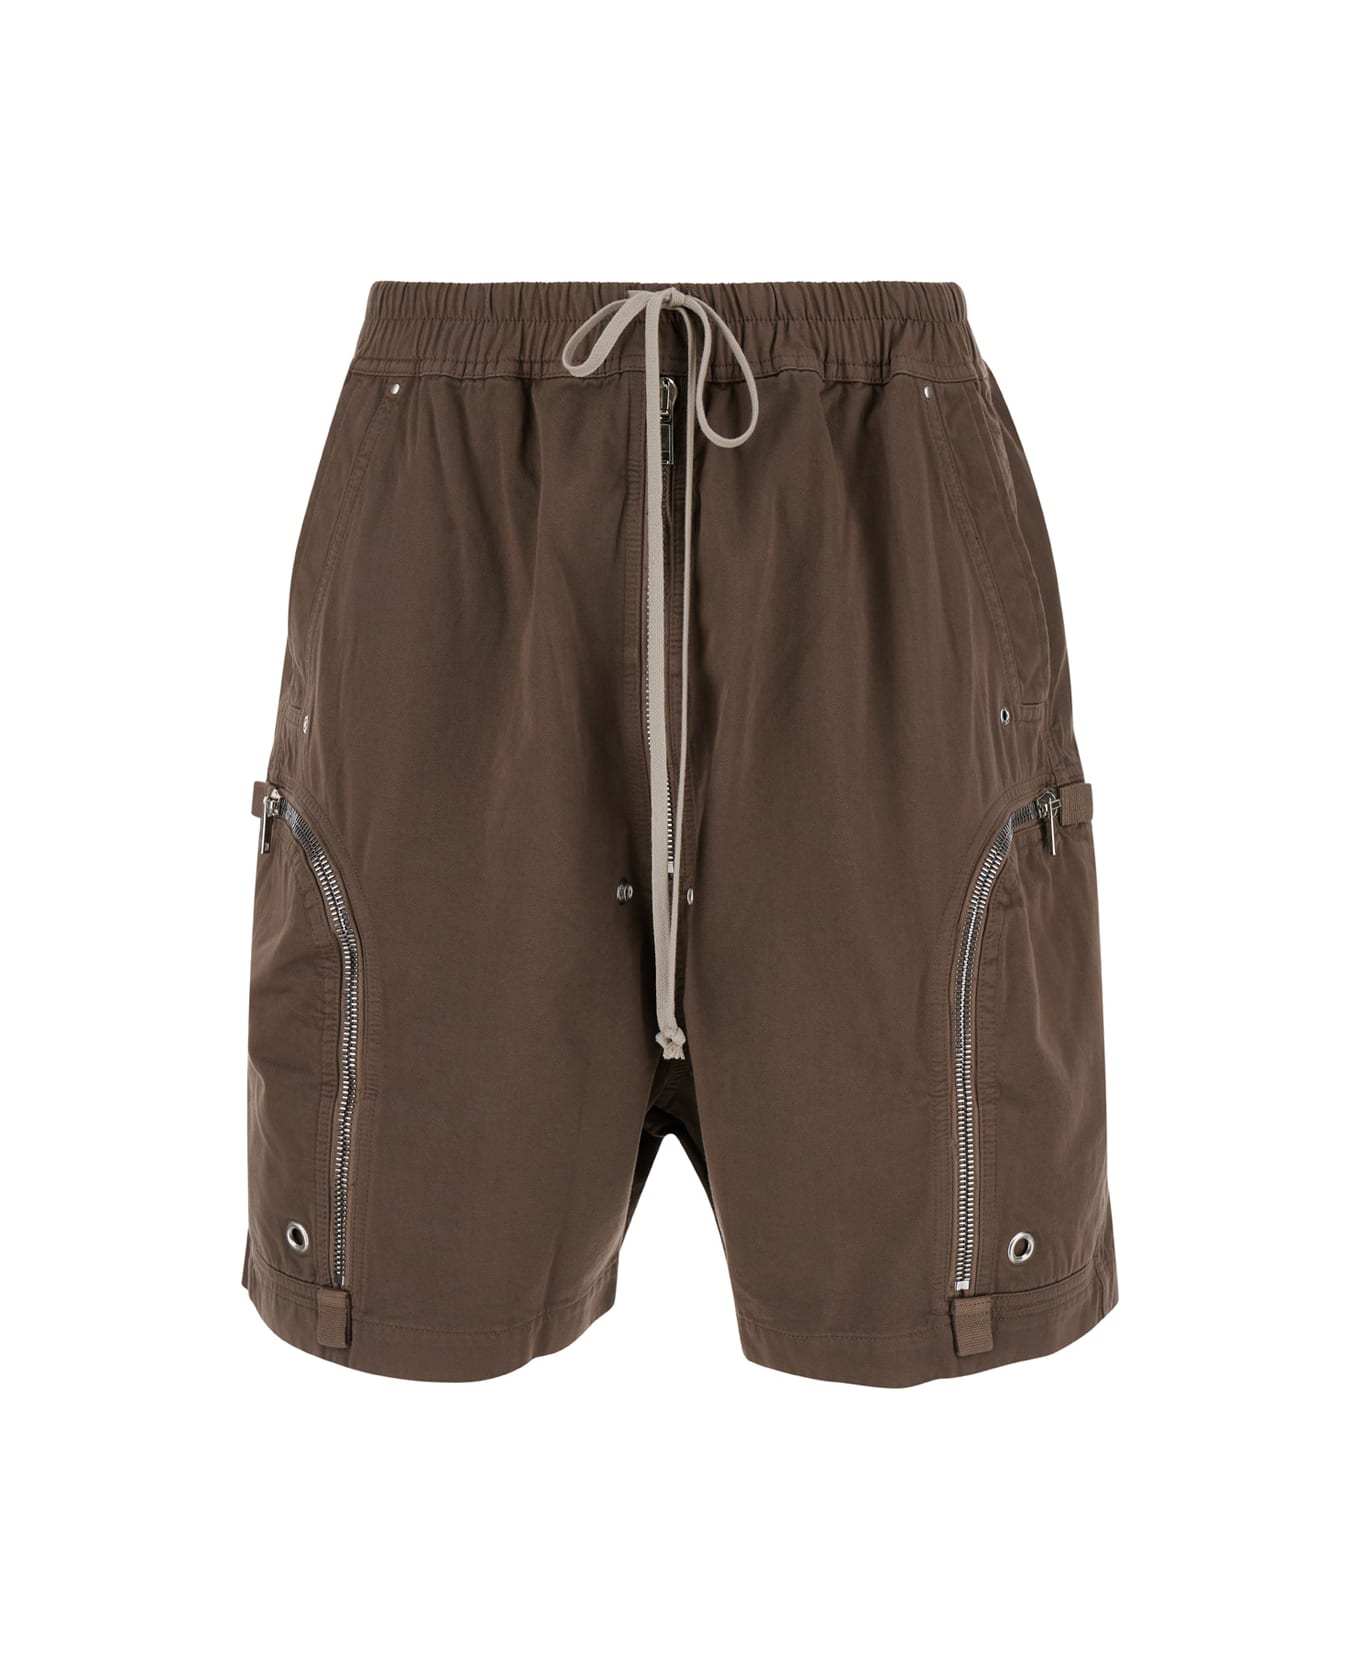 DRKSHDW 'bauhaus' Brown Bermuda Shorts With Zip Pockets In Cotton Man - Beige